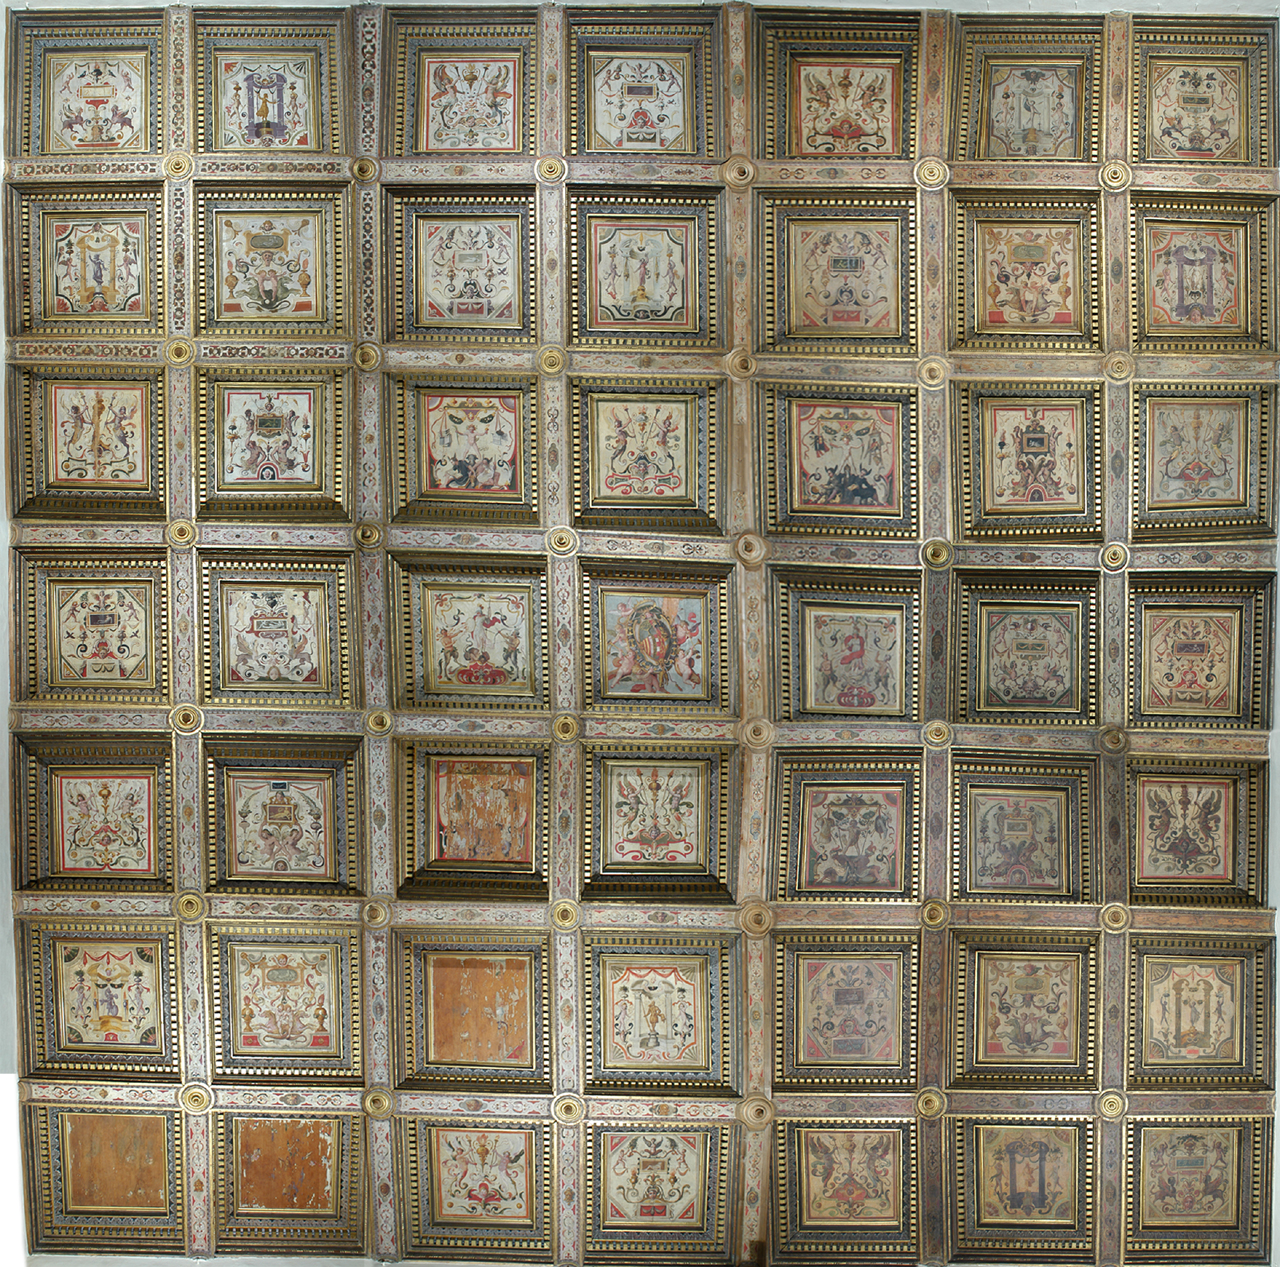 motivi decorativi vegetali, figure allegoriche e stemma Della Rovere (soffitto a cassettoni) di Zuccari Taddeo (sec. XVI)